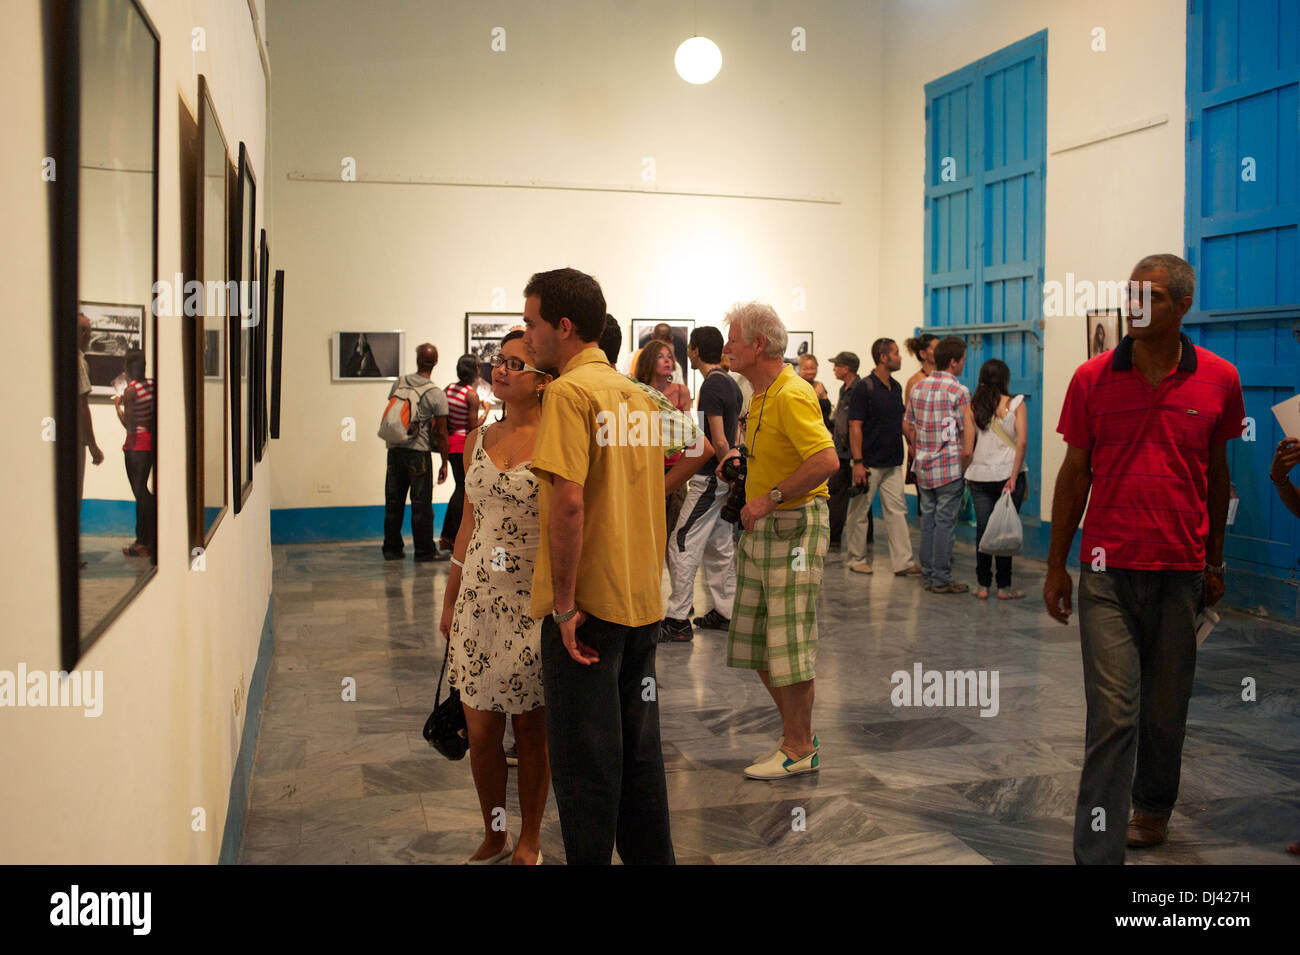 Exposition de photos, La Havane, Cuba Banque D'Images